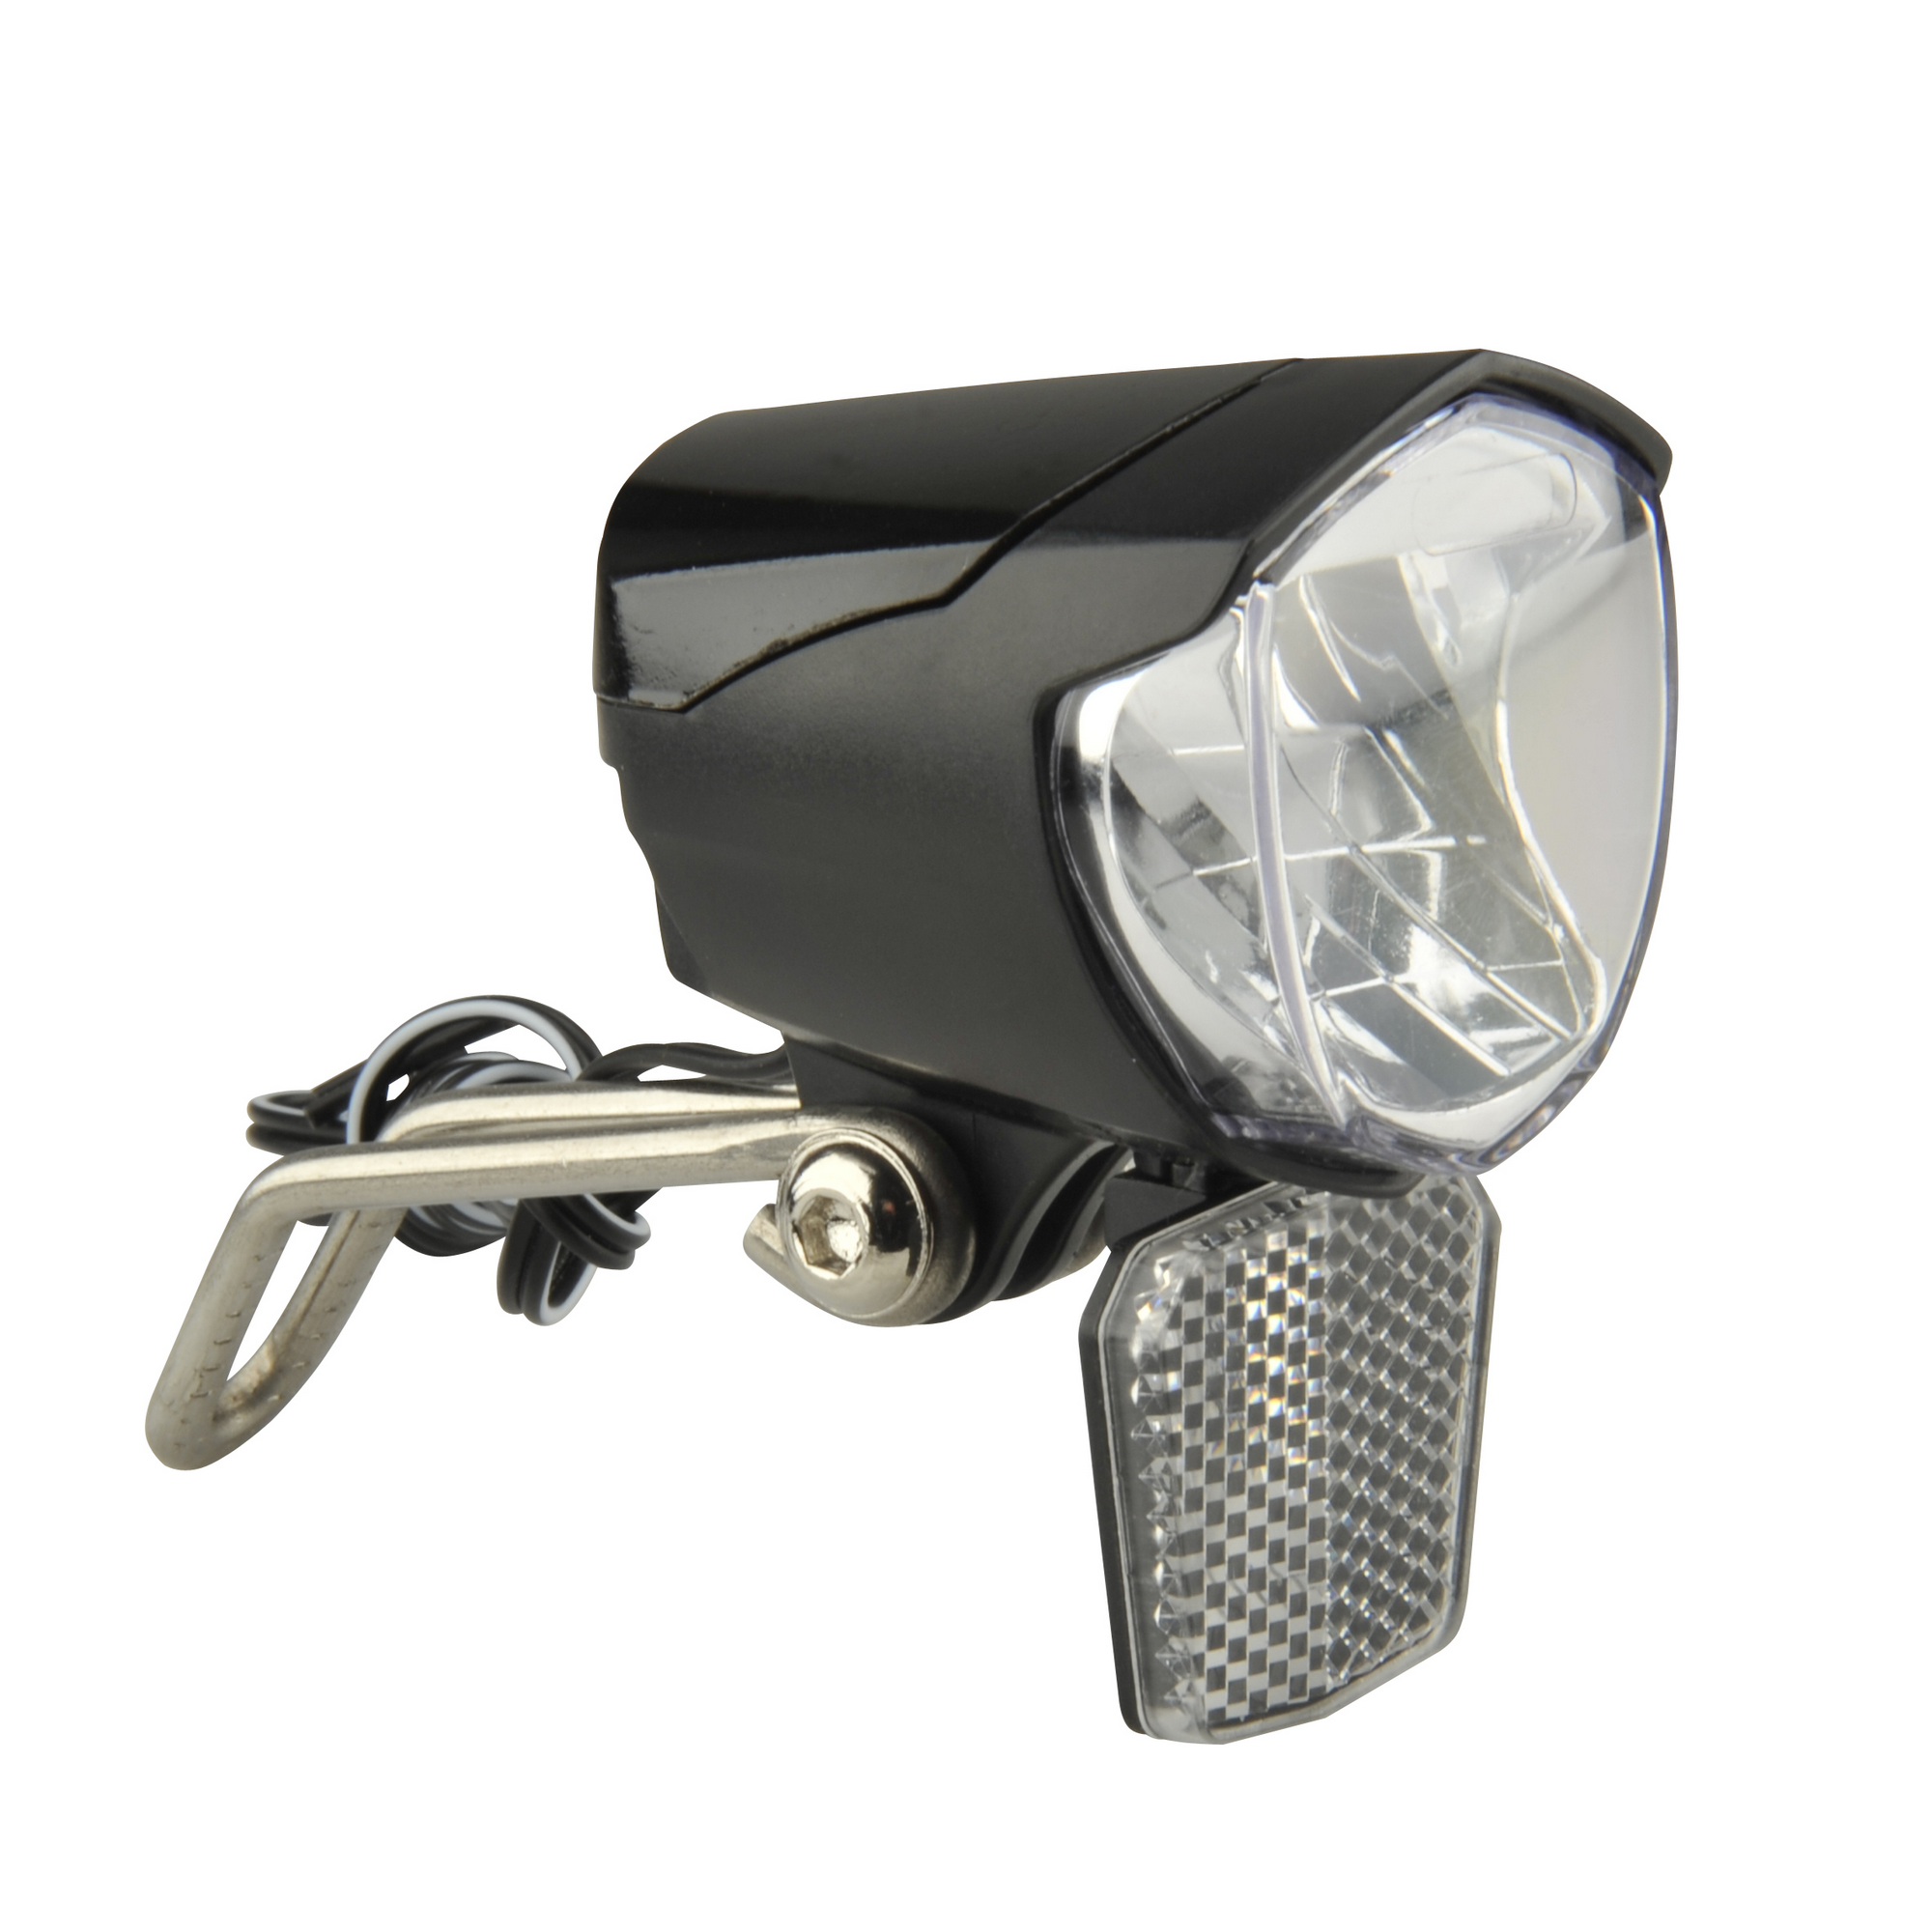 Fahrrad Licht Set Kit Fahrrad Sicherheit Vorderlicht Rücklicht Rücklicht  Dynamo